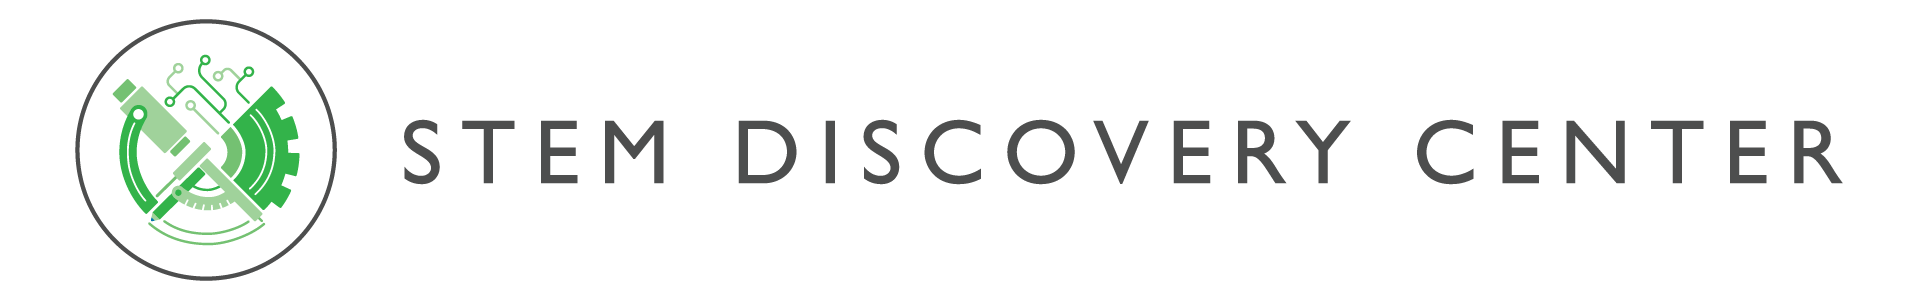 STEM Discovery Center Logo